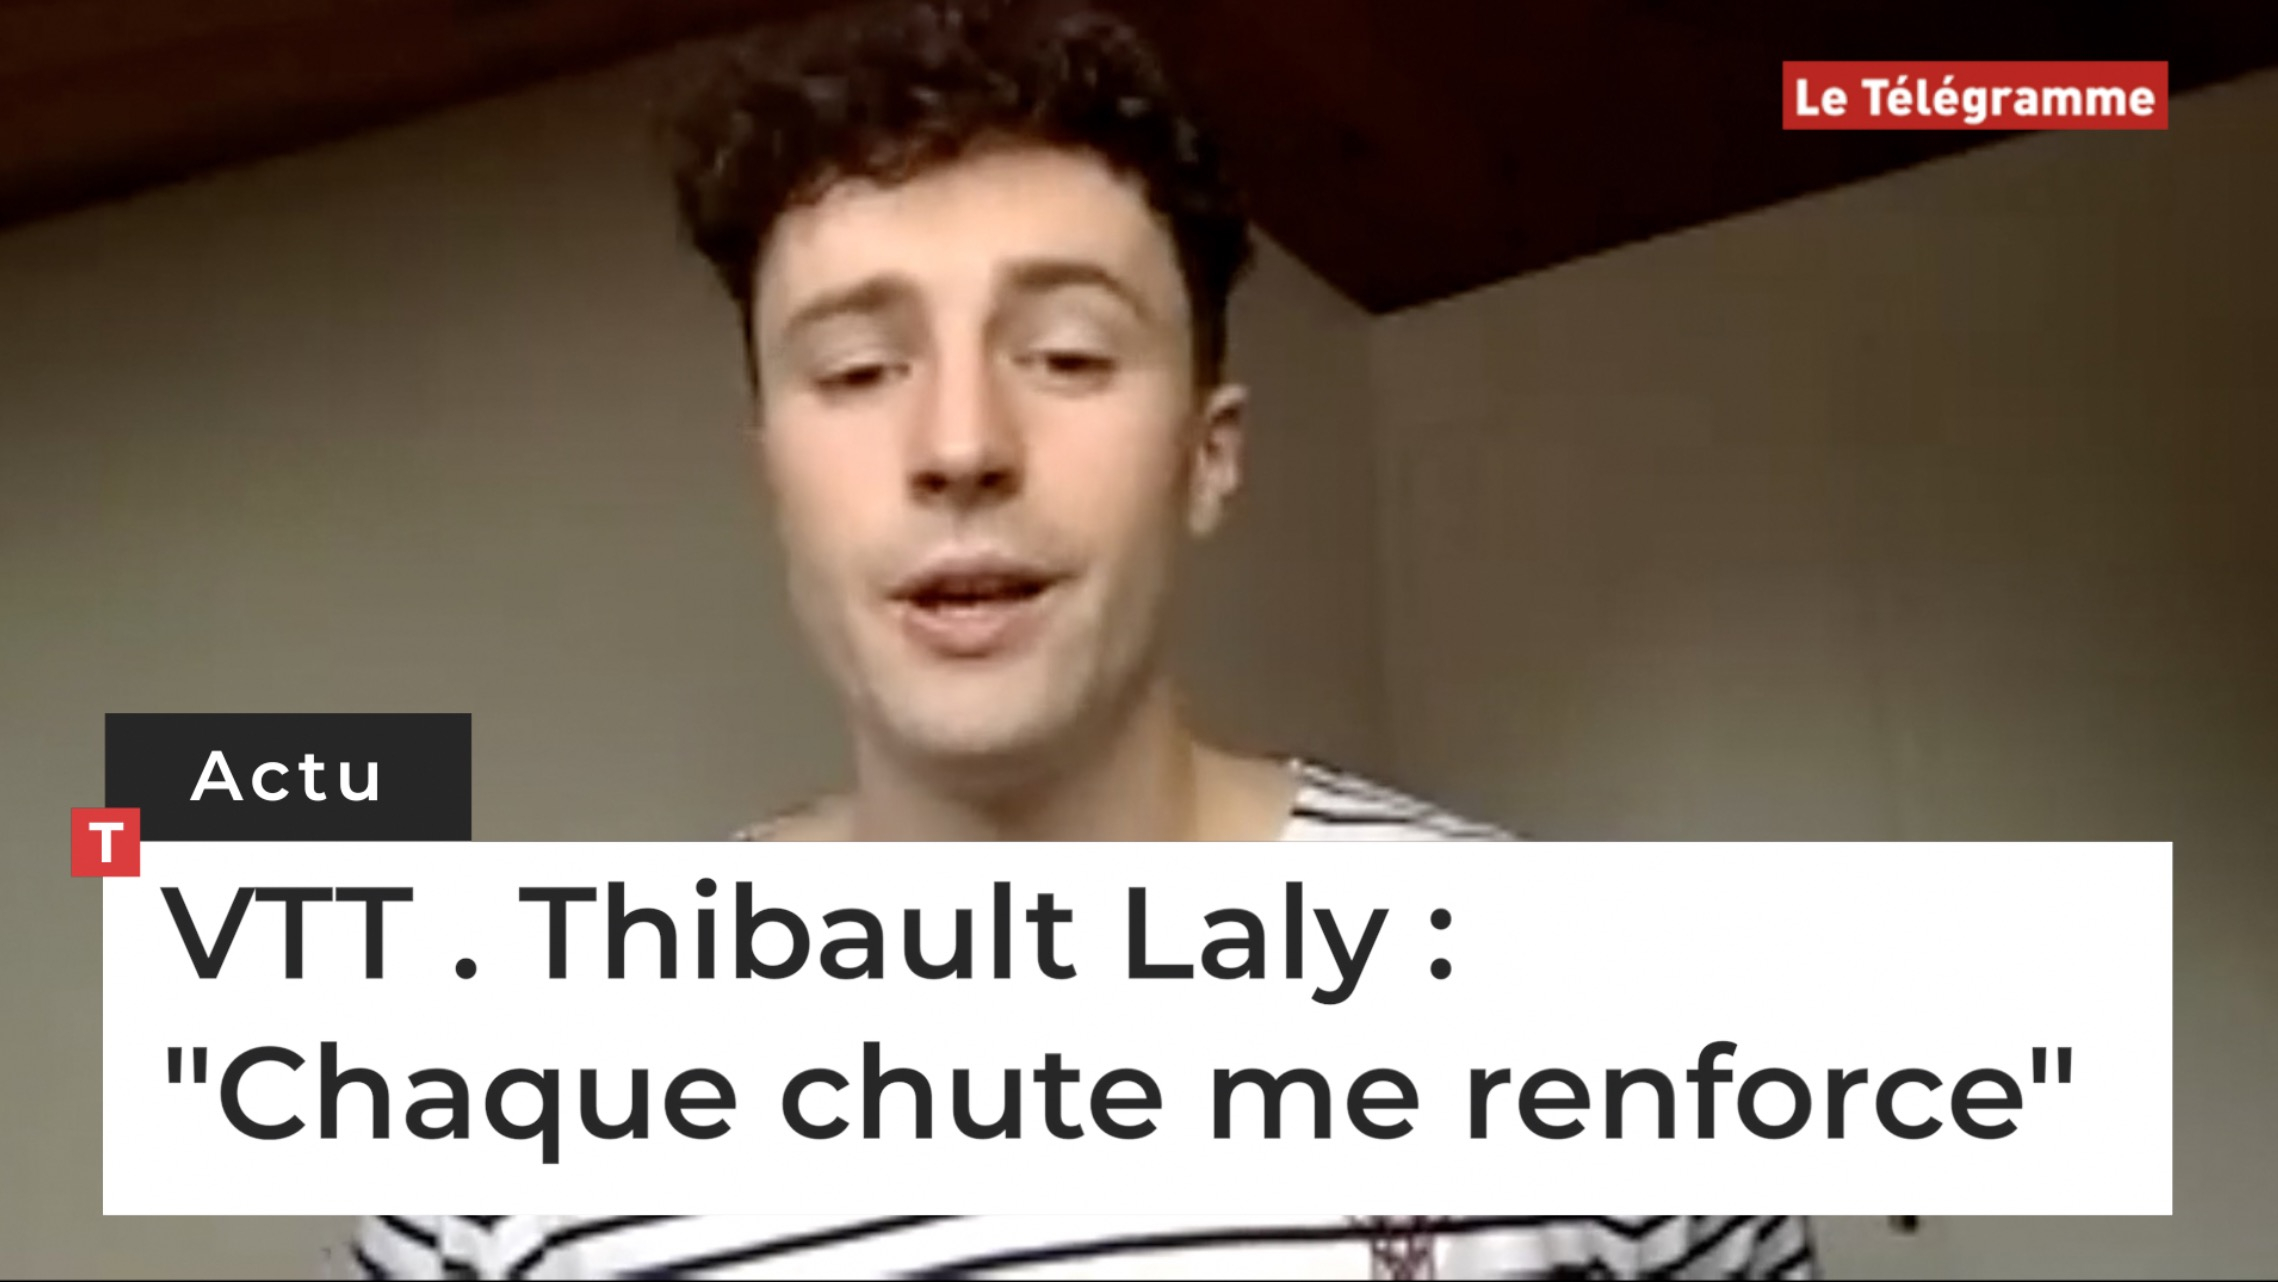 VTT. Thibault Laly : "Chaque chute me renforce" (Le Télégramme)